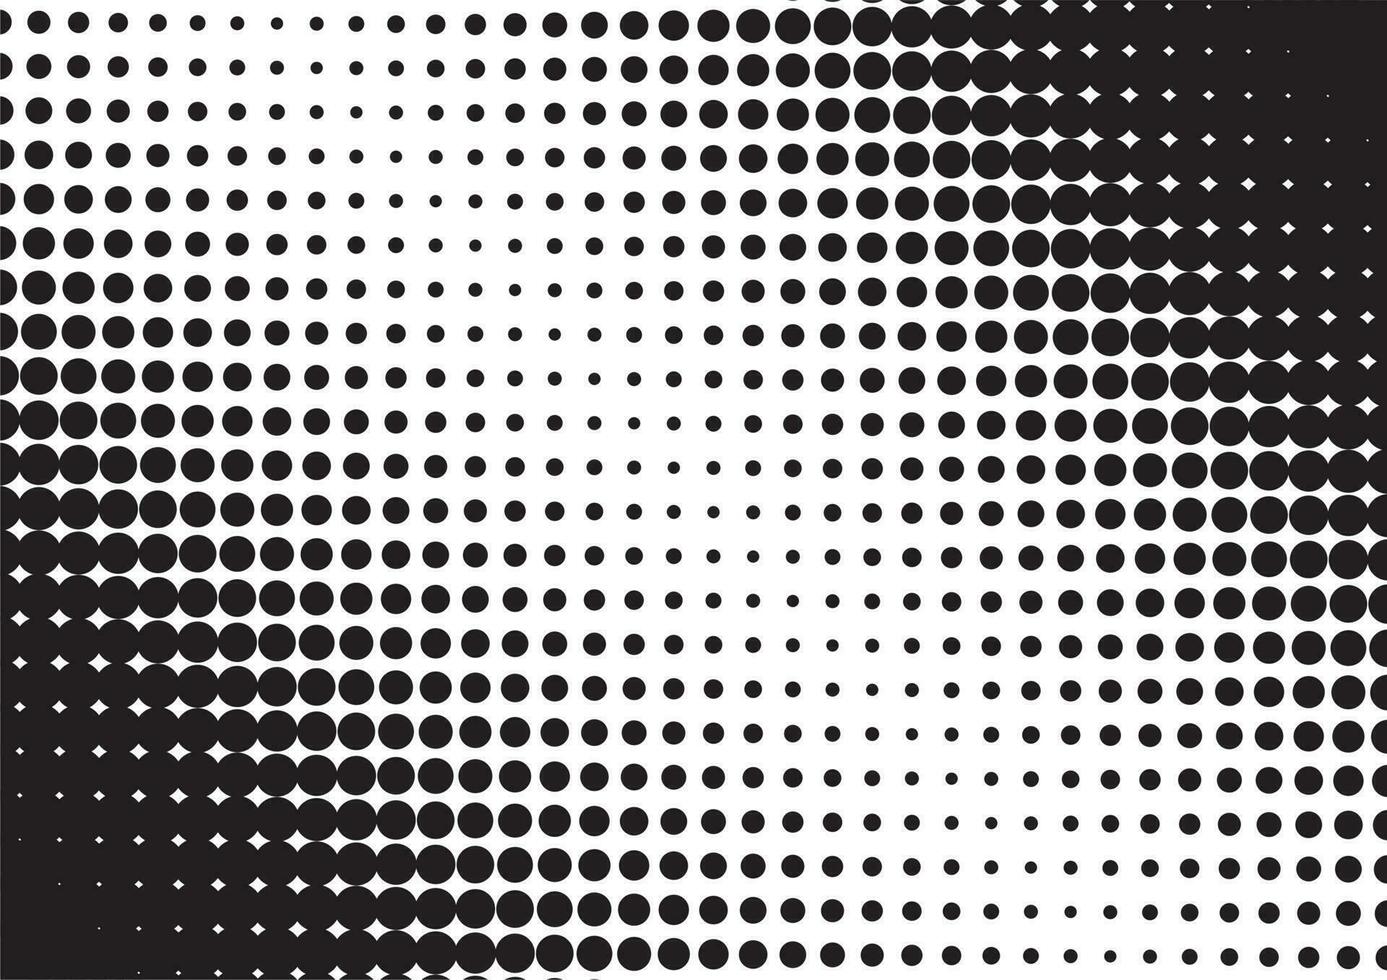 resumen trama de semitonos textura. negro puntos en un blanco antecedentes. vector